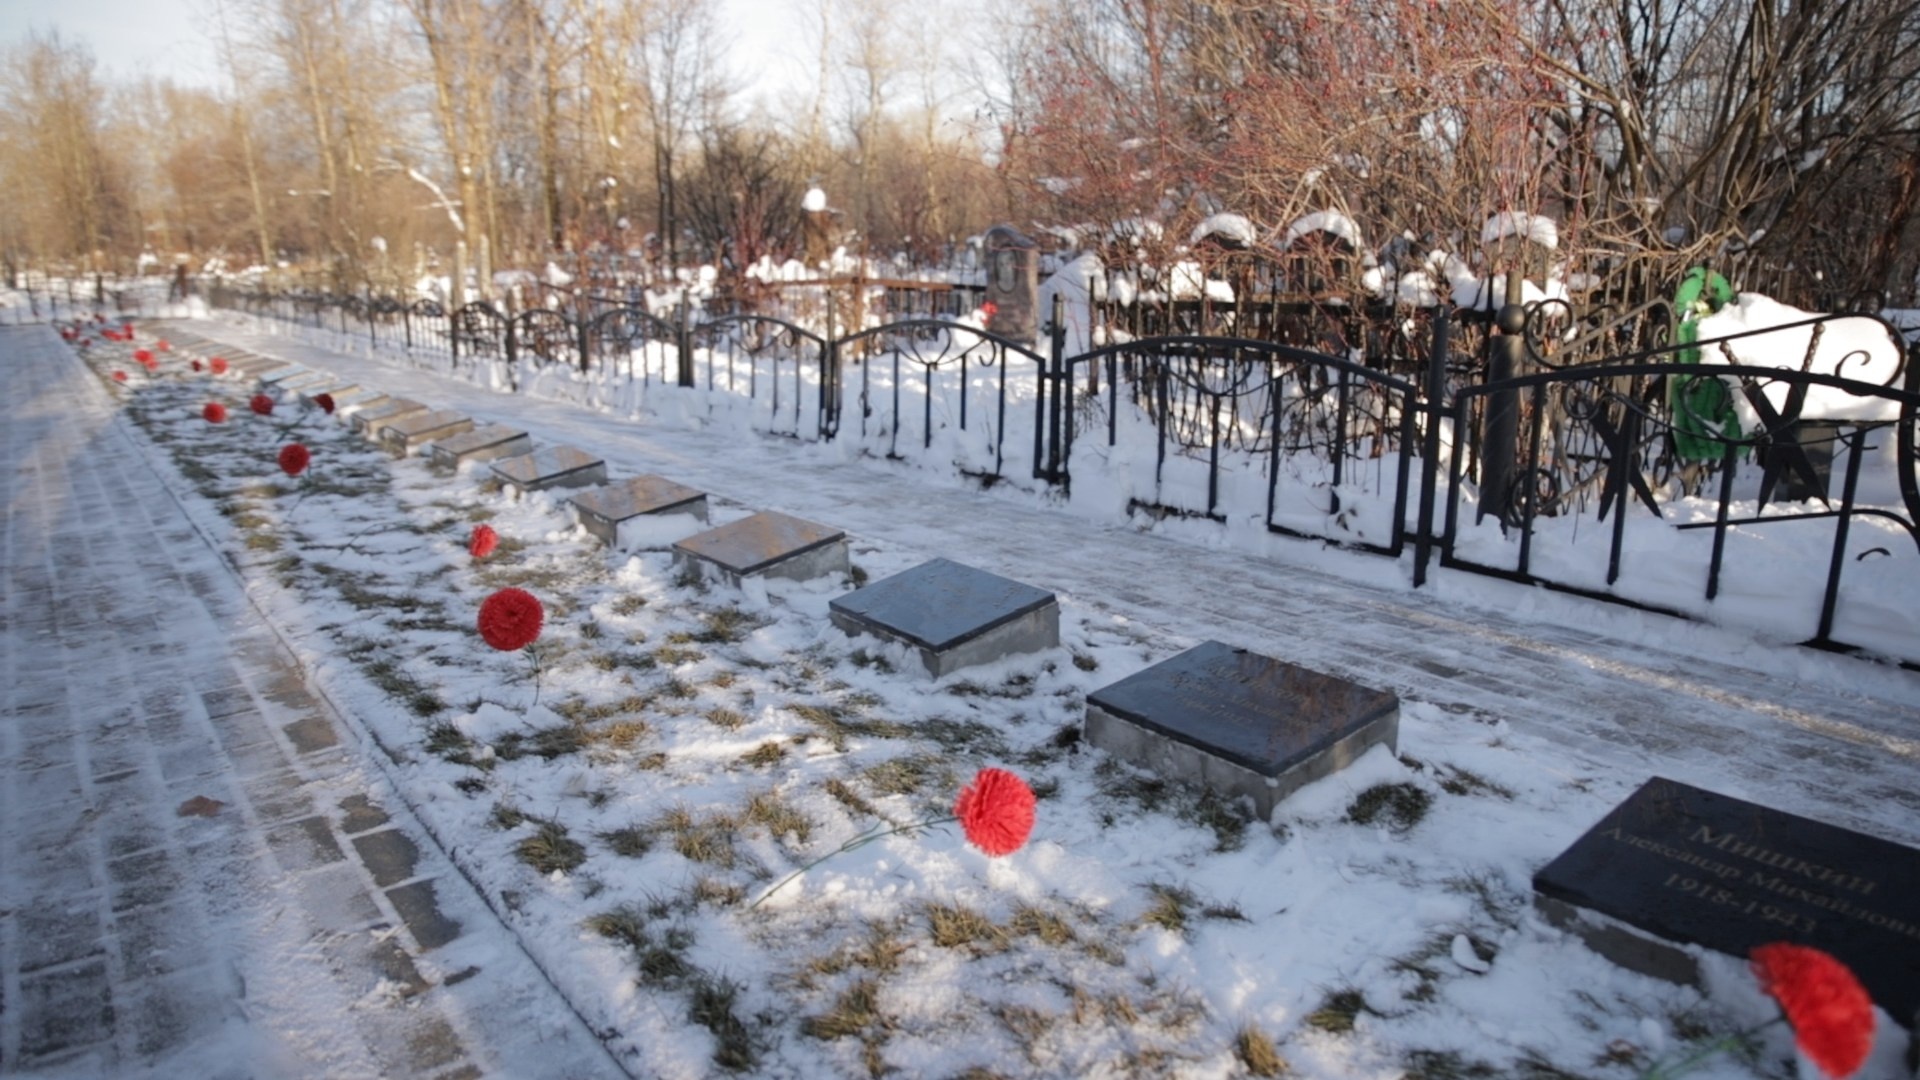 Поддержали проект реконструкции Братского кладбища советских воинов